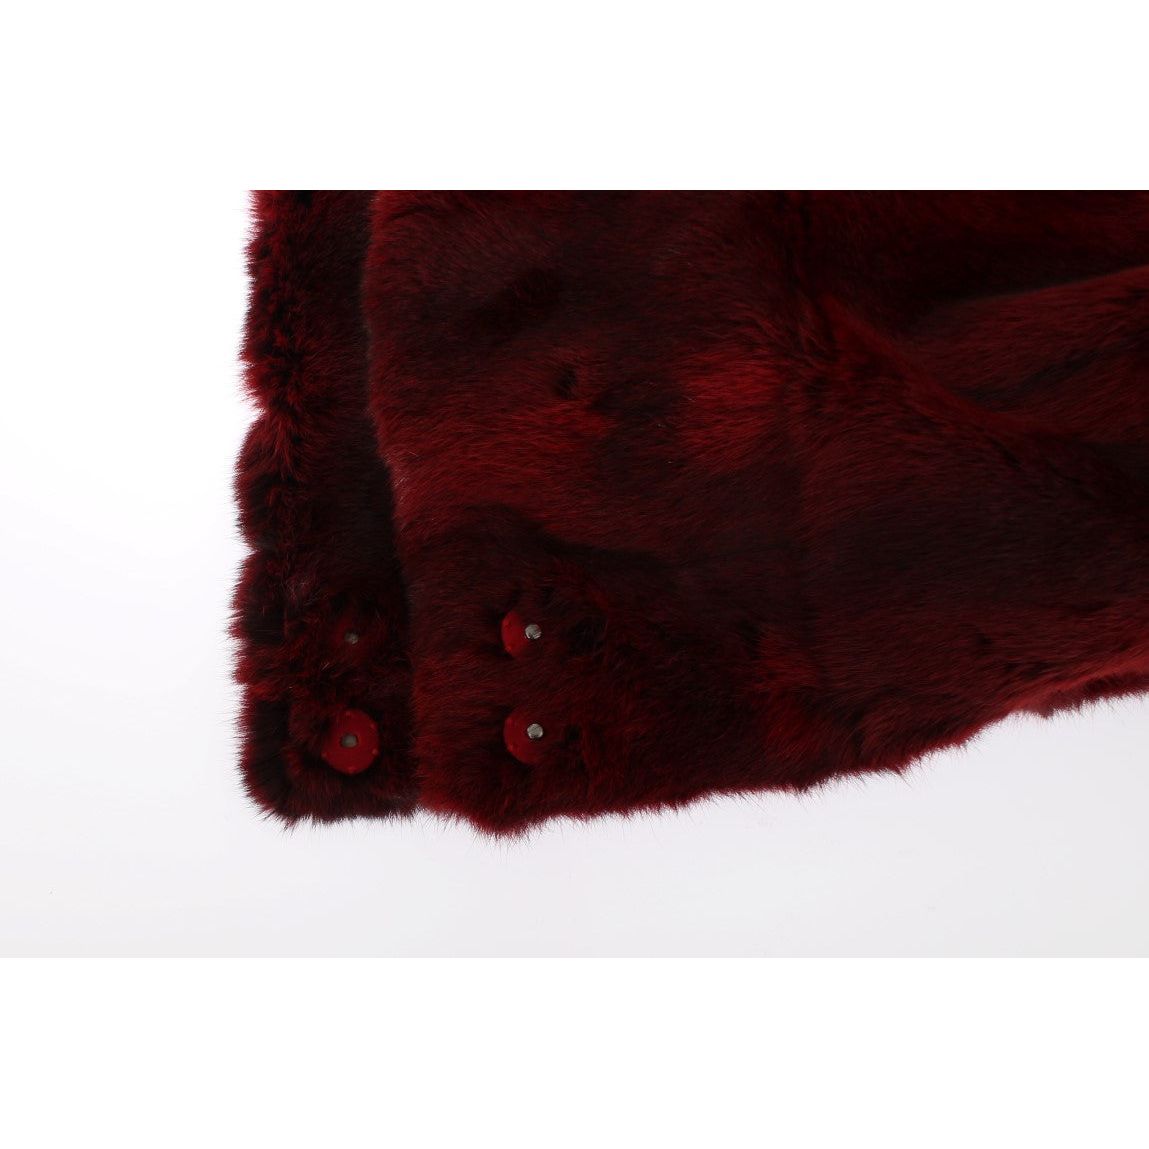 Dolce & Gabbana Luxurious Bordeaux Fur Hooded Scarf Wrap Hood Scarf bordeaux-hamster-fur-crochet-hood-scarf-hat 306431-bordeaux-hamster-fur-crochet-hood-scarf-hat-7.jpg